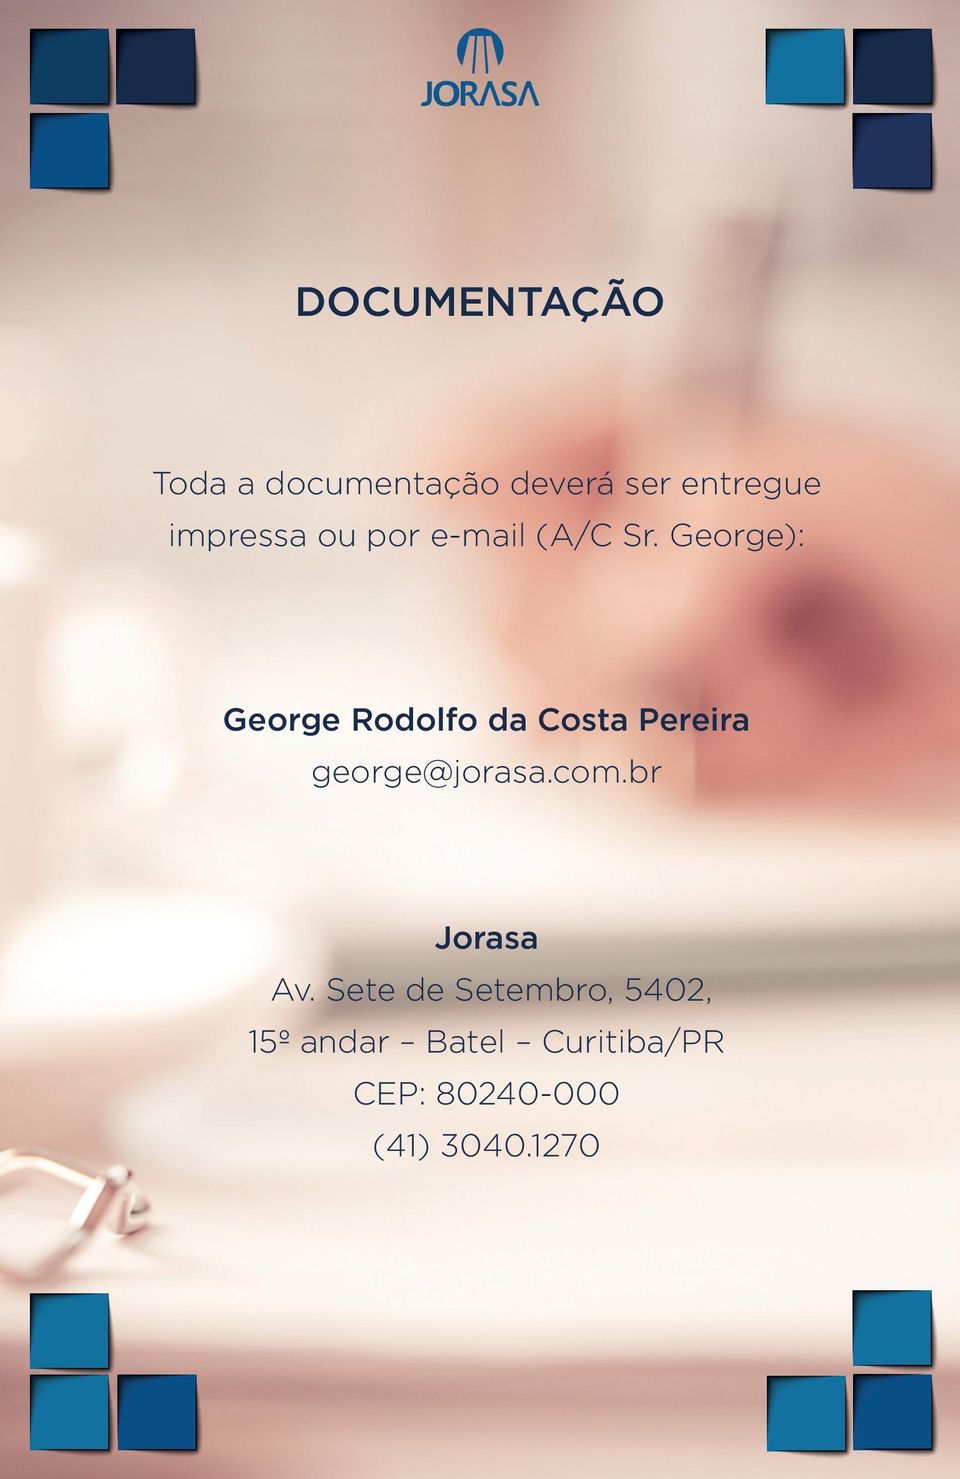 George): George Rodolfo da Costa Pereira george@jorasa.com.